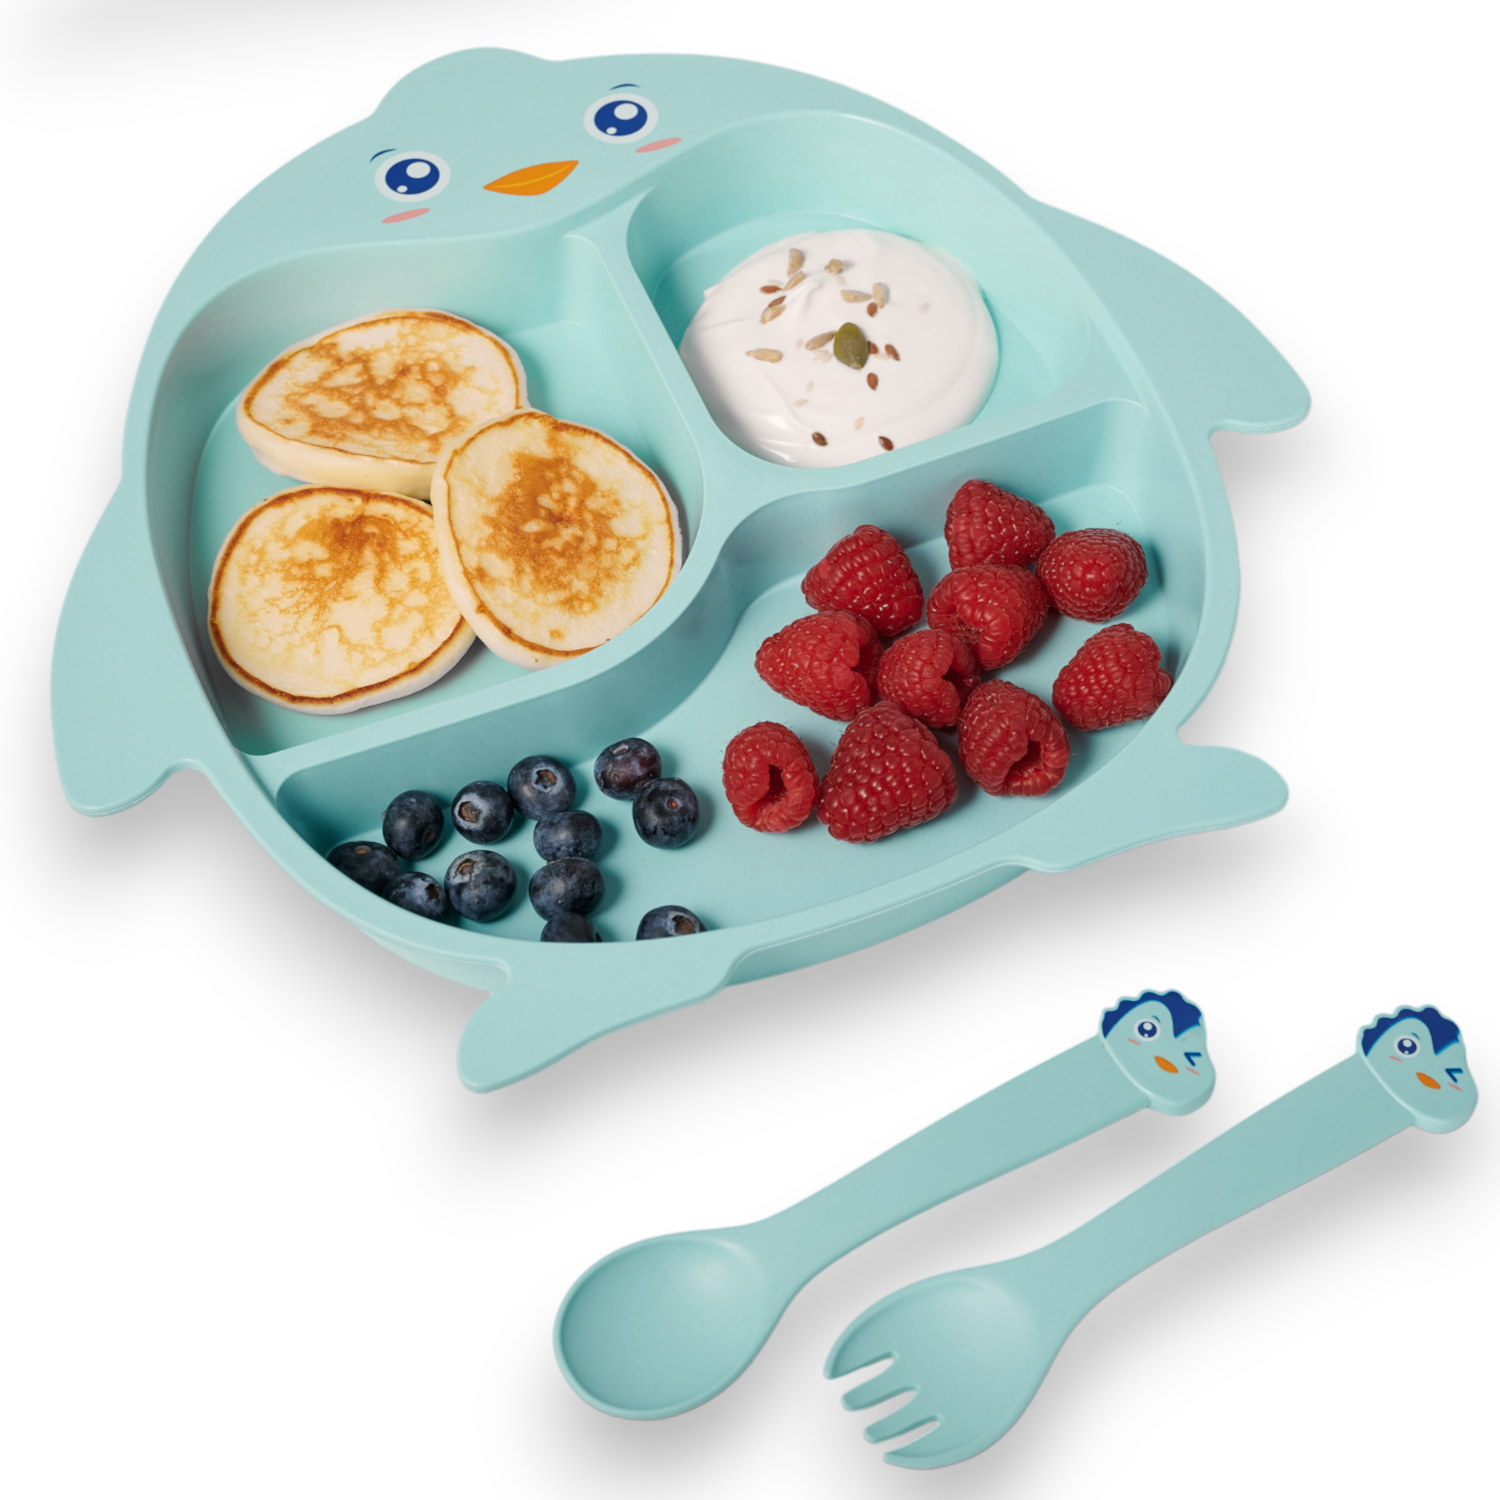 Детская посуда для кормления Добрый Филин Пингвинёнок тарелка, ложка, вилка, палочки кольчугинский мельхиор вилка детская посеребренная с эмалью мишка в блистере